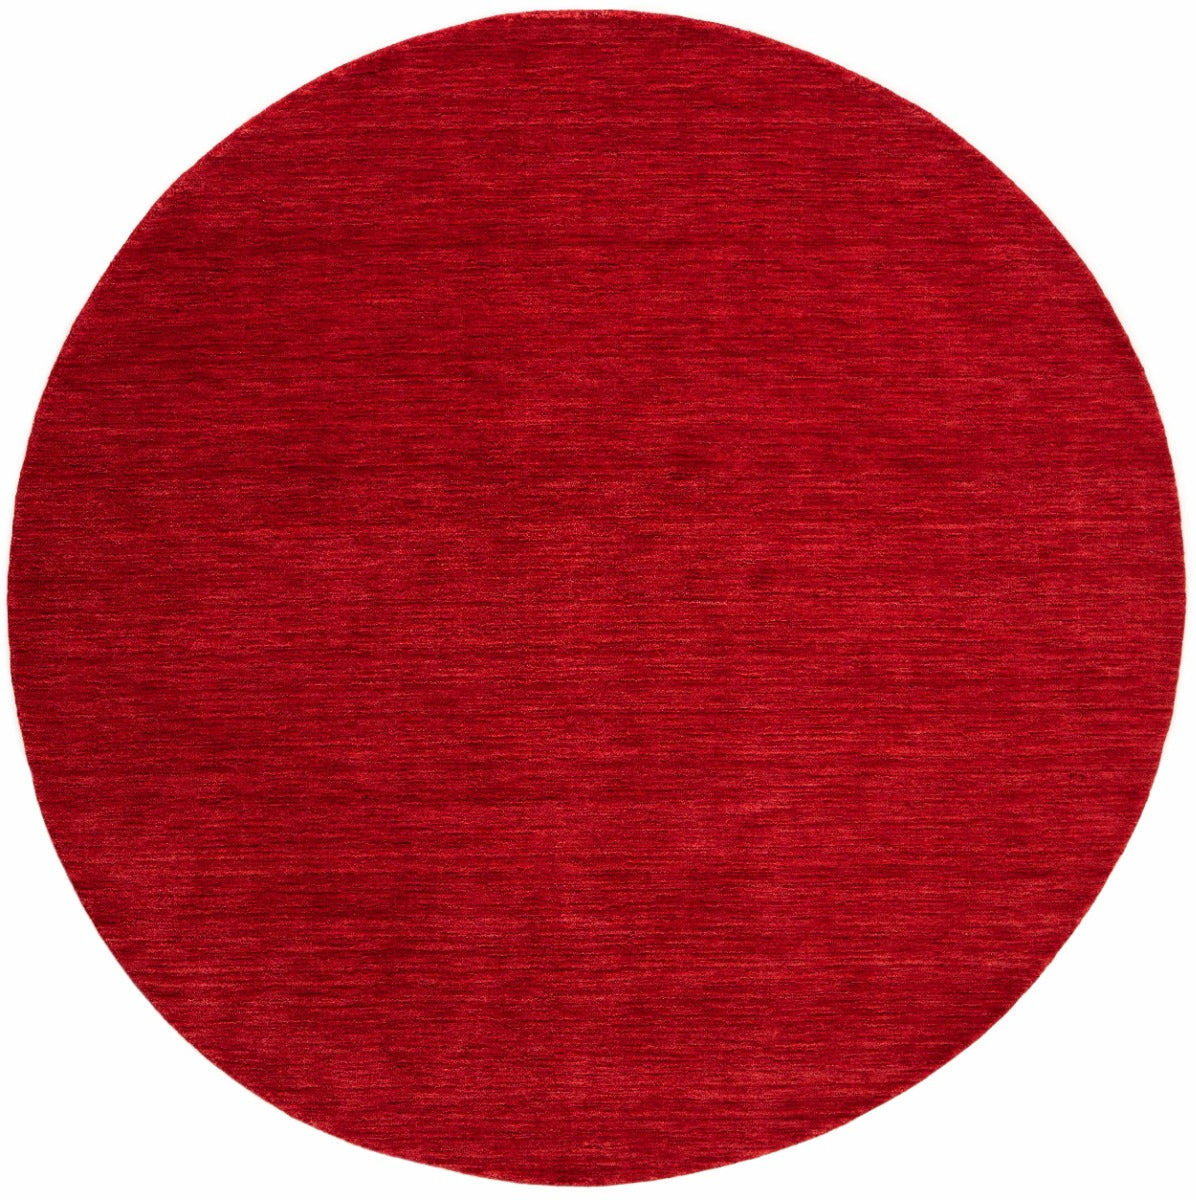 plain red wool circle rug